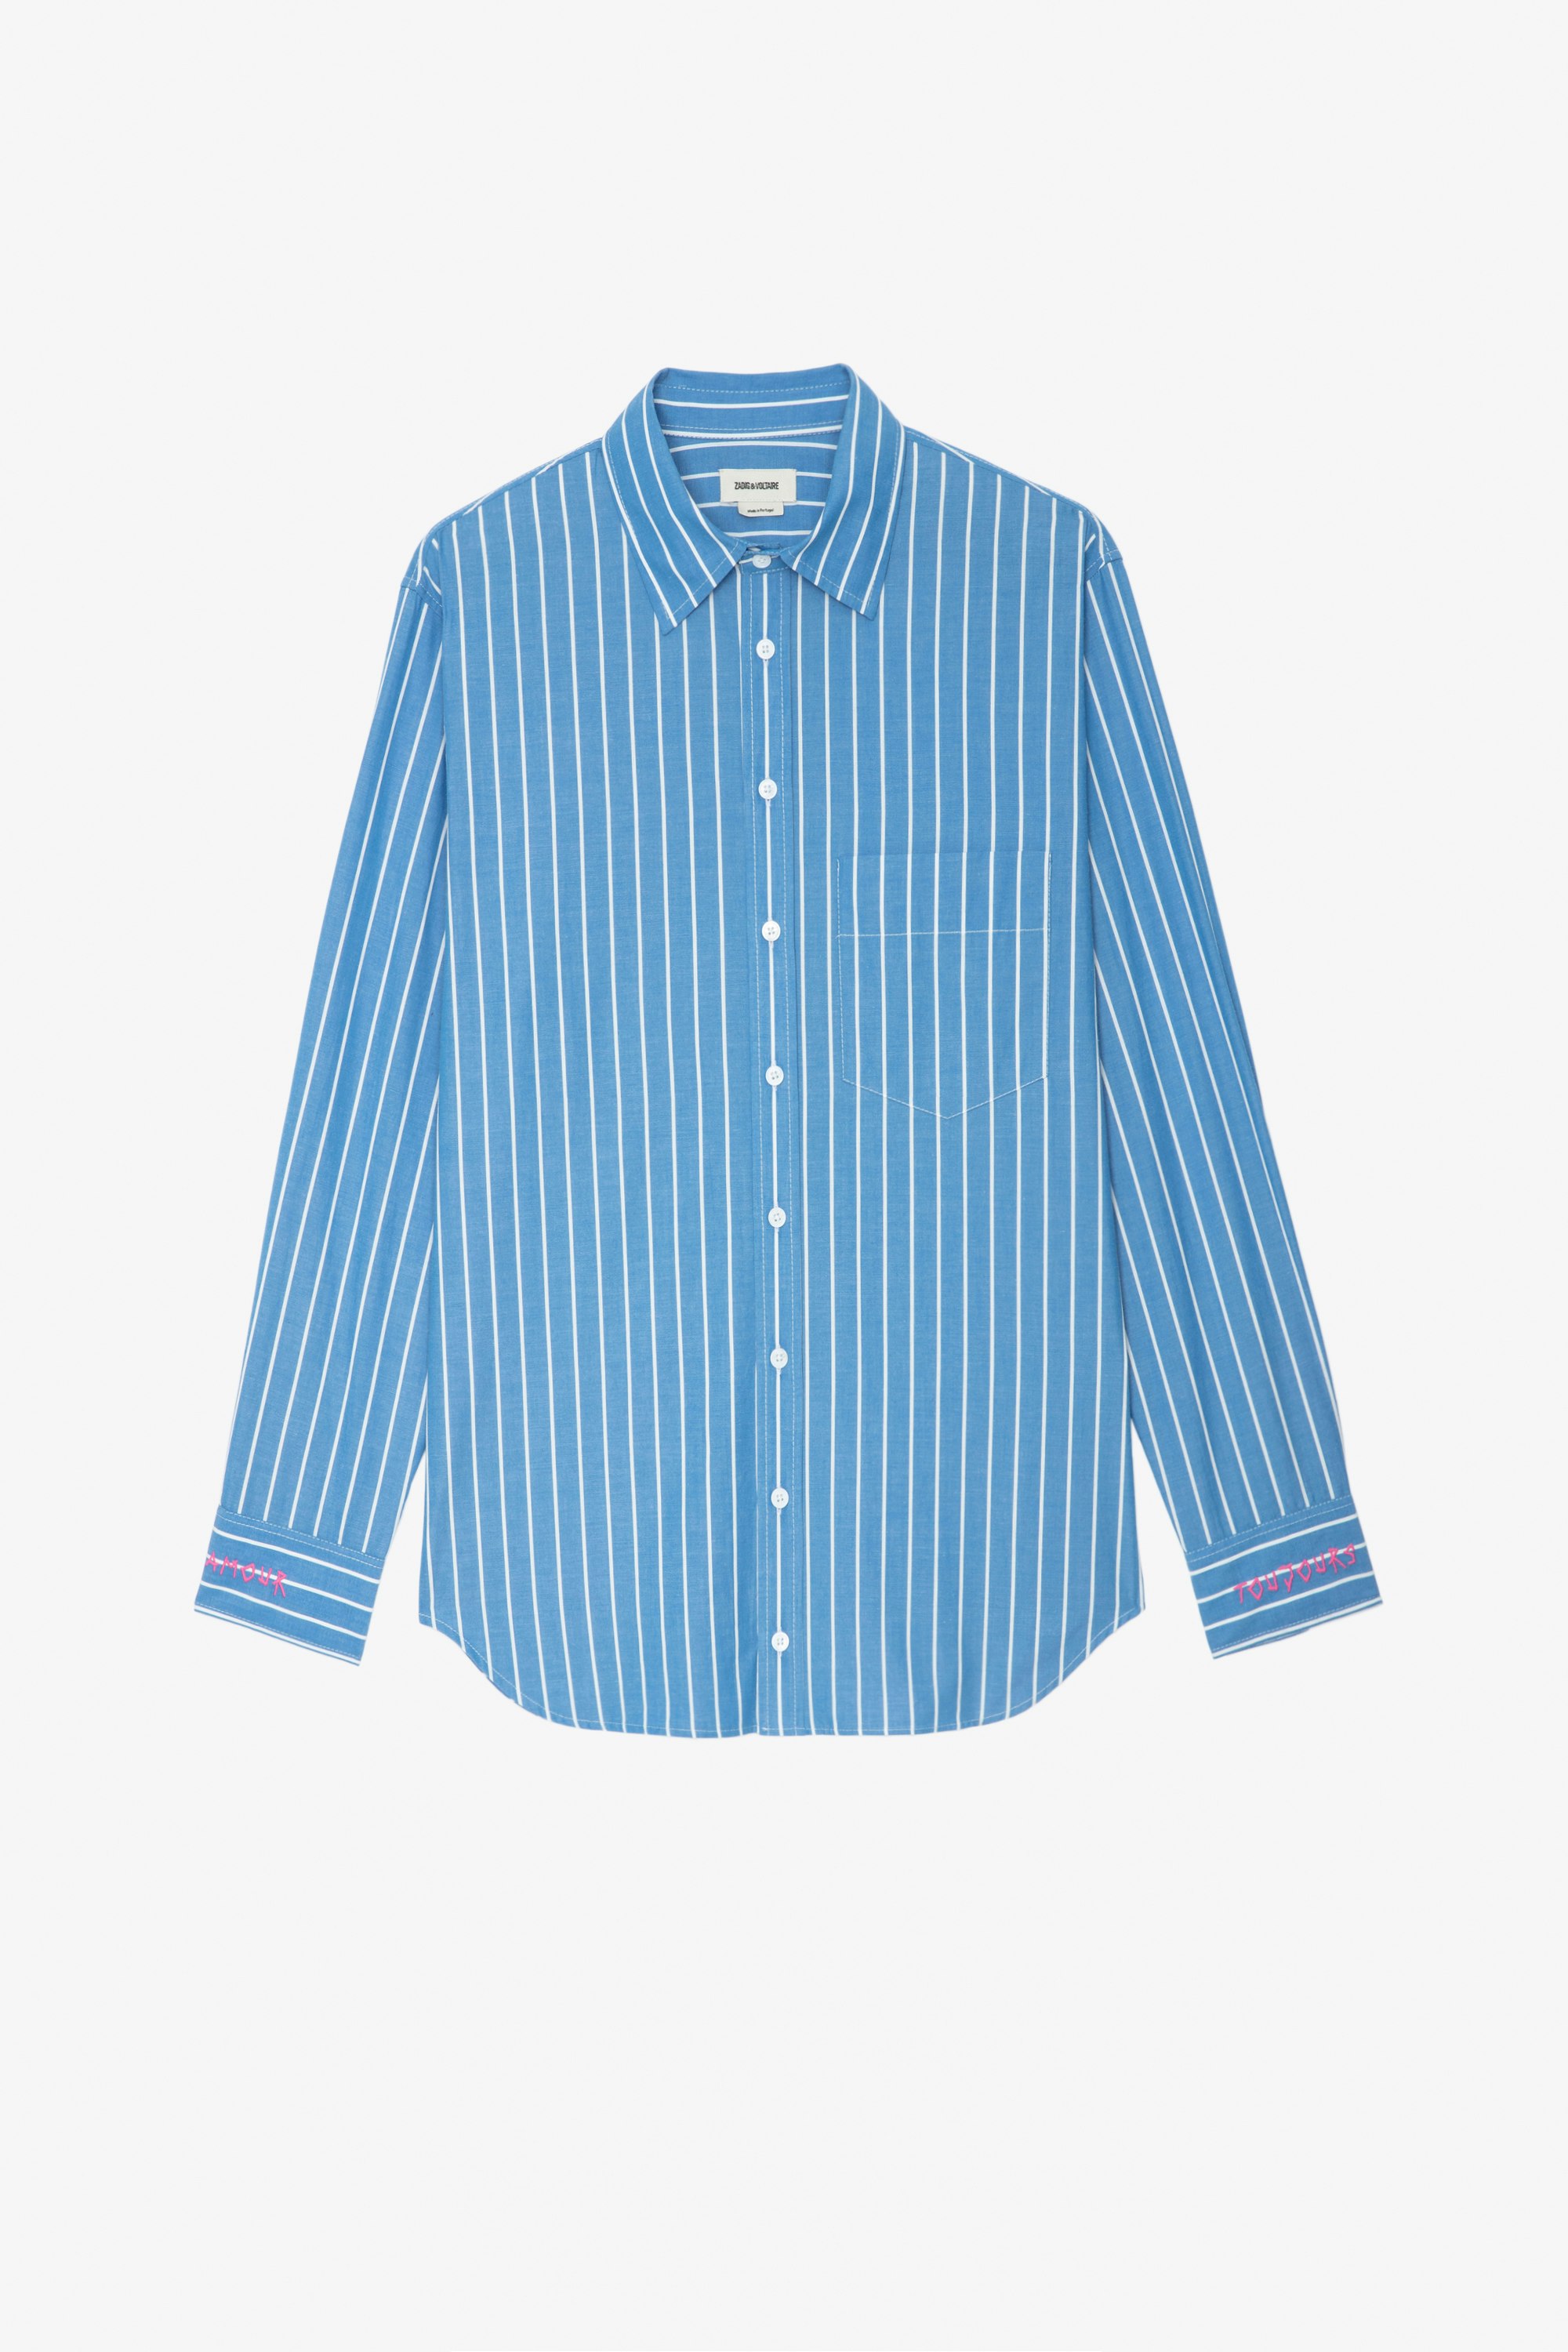 Taski シャツ ブルー コットンシャツ ストライプ生地と袖口に「Amours Toujours」刺繍 レディース